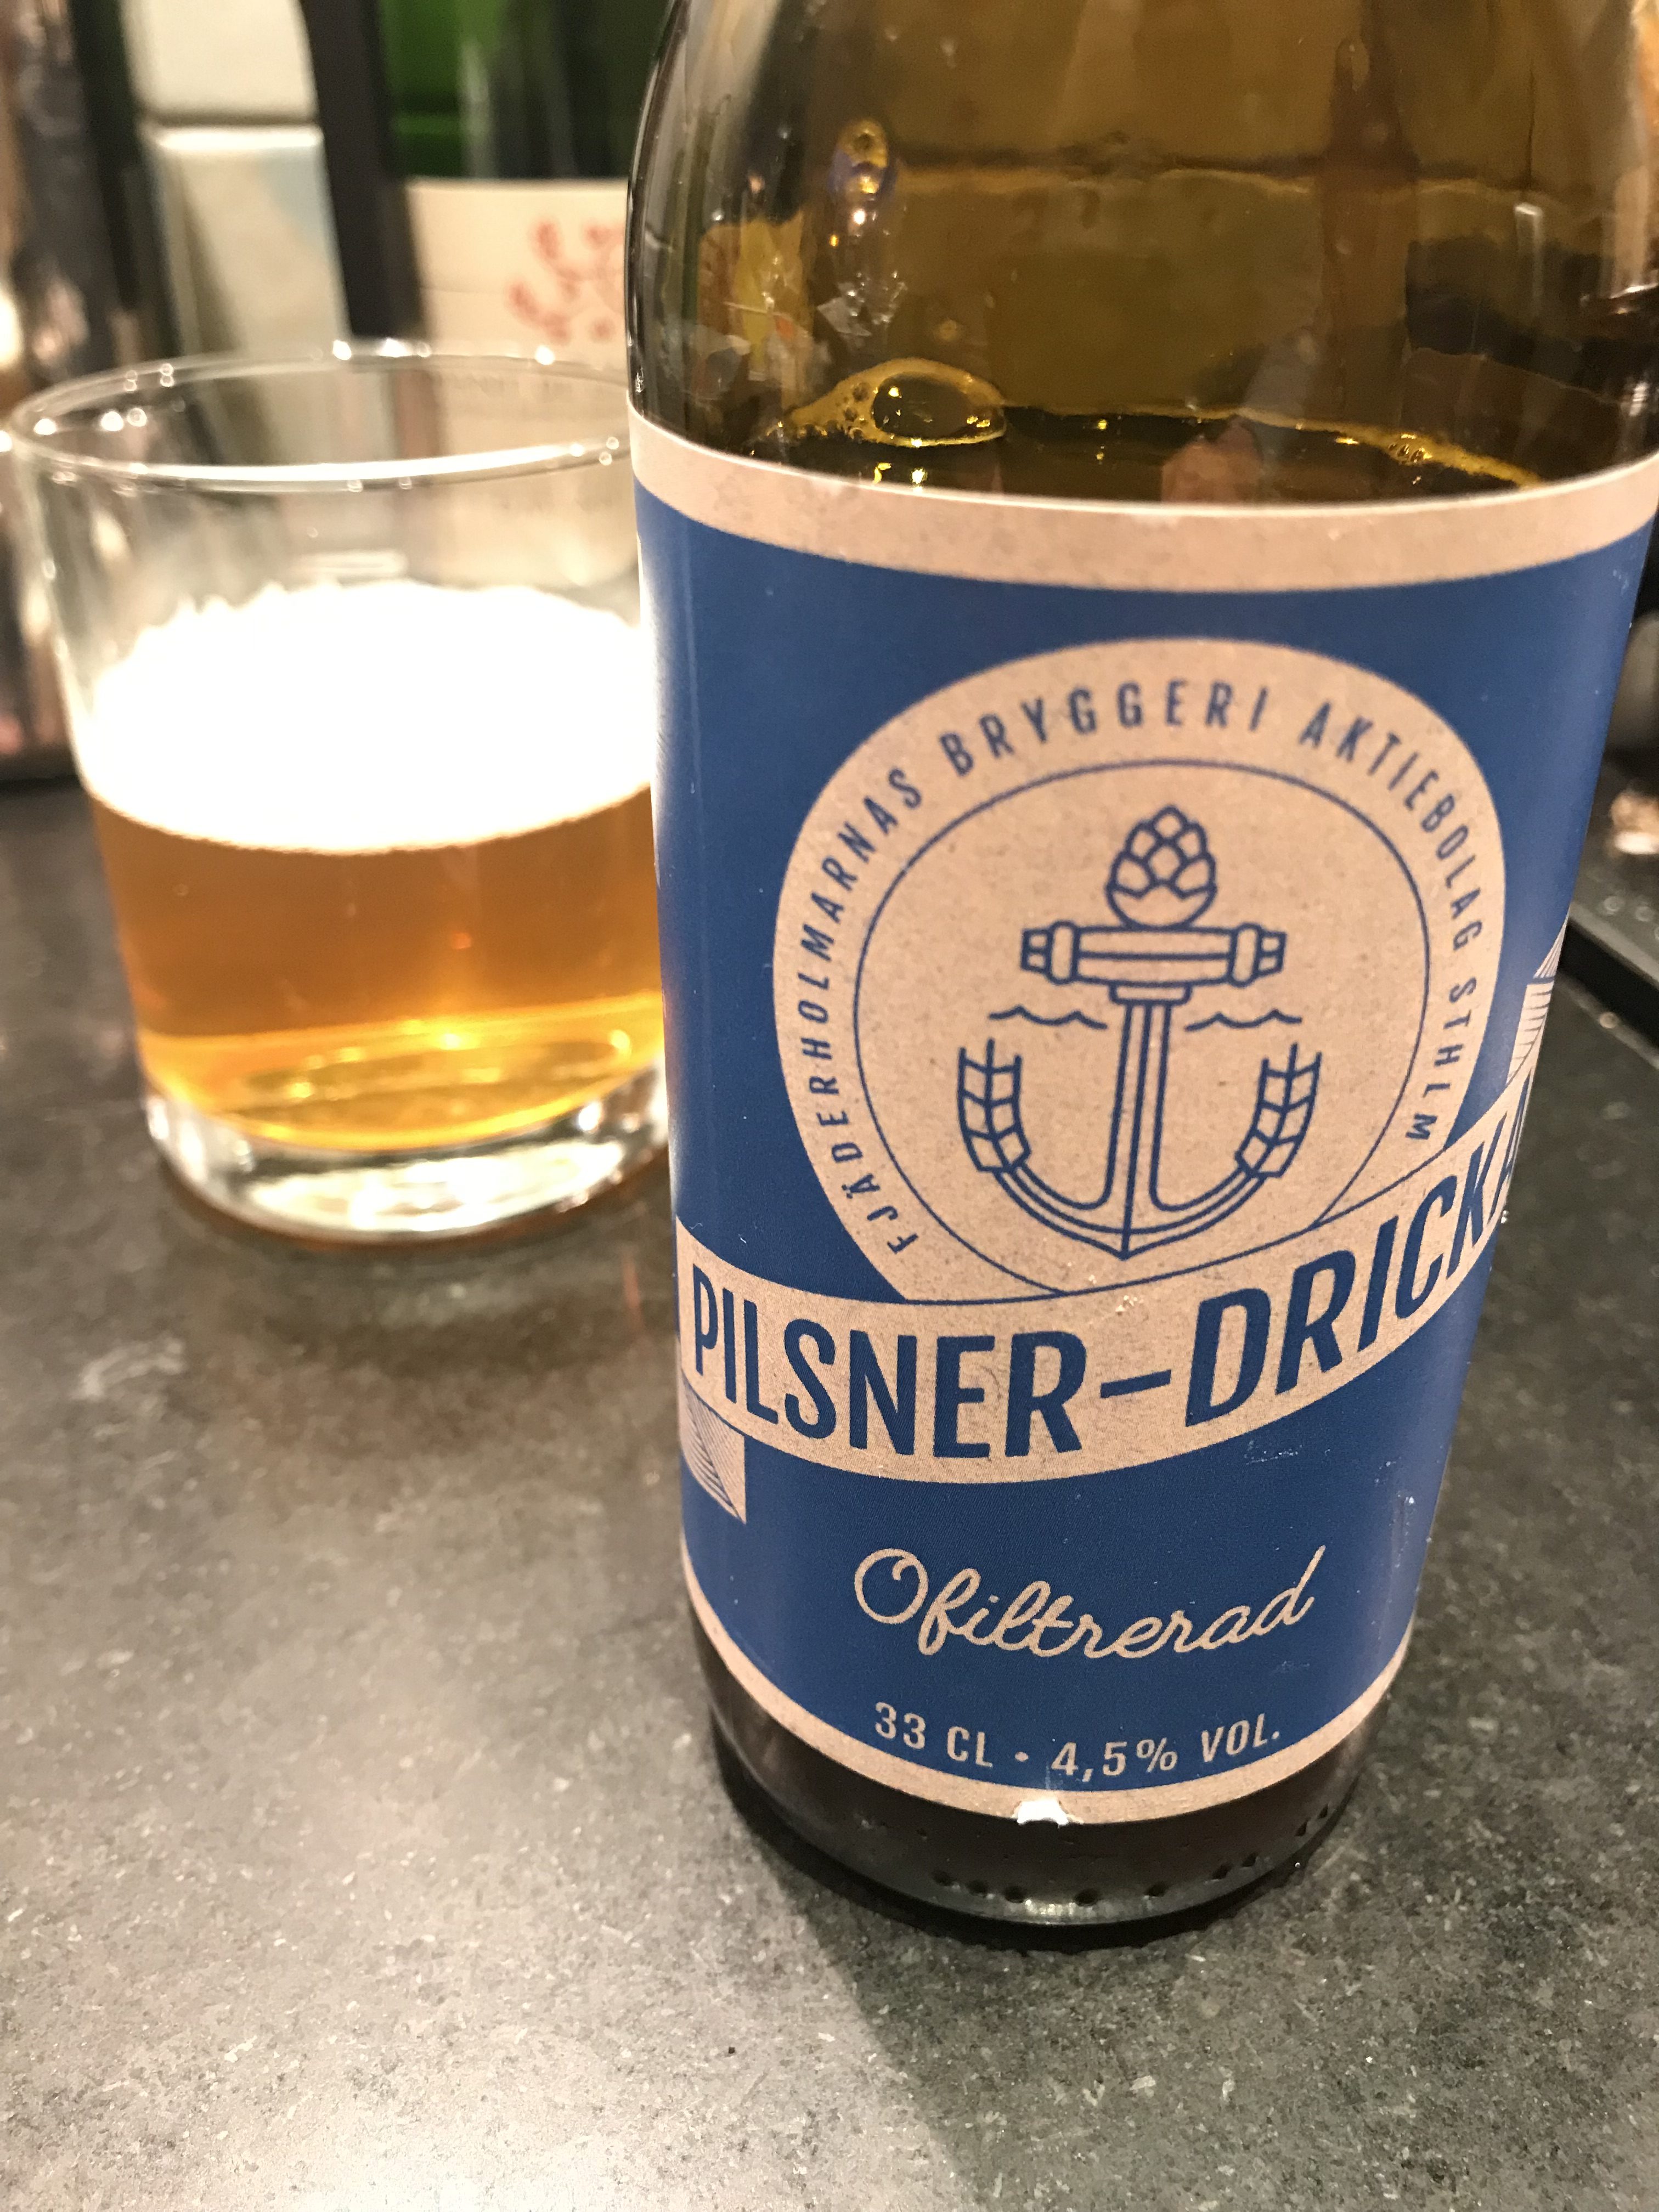 Pilsner-dricka från Fjäderholmarnas bryggeri. Foto: Joel Linderoth.